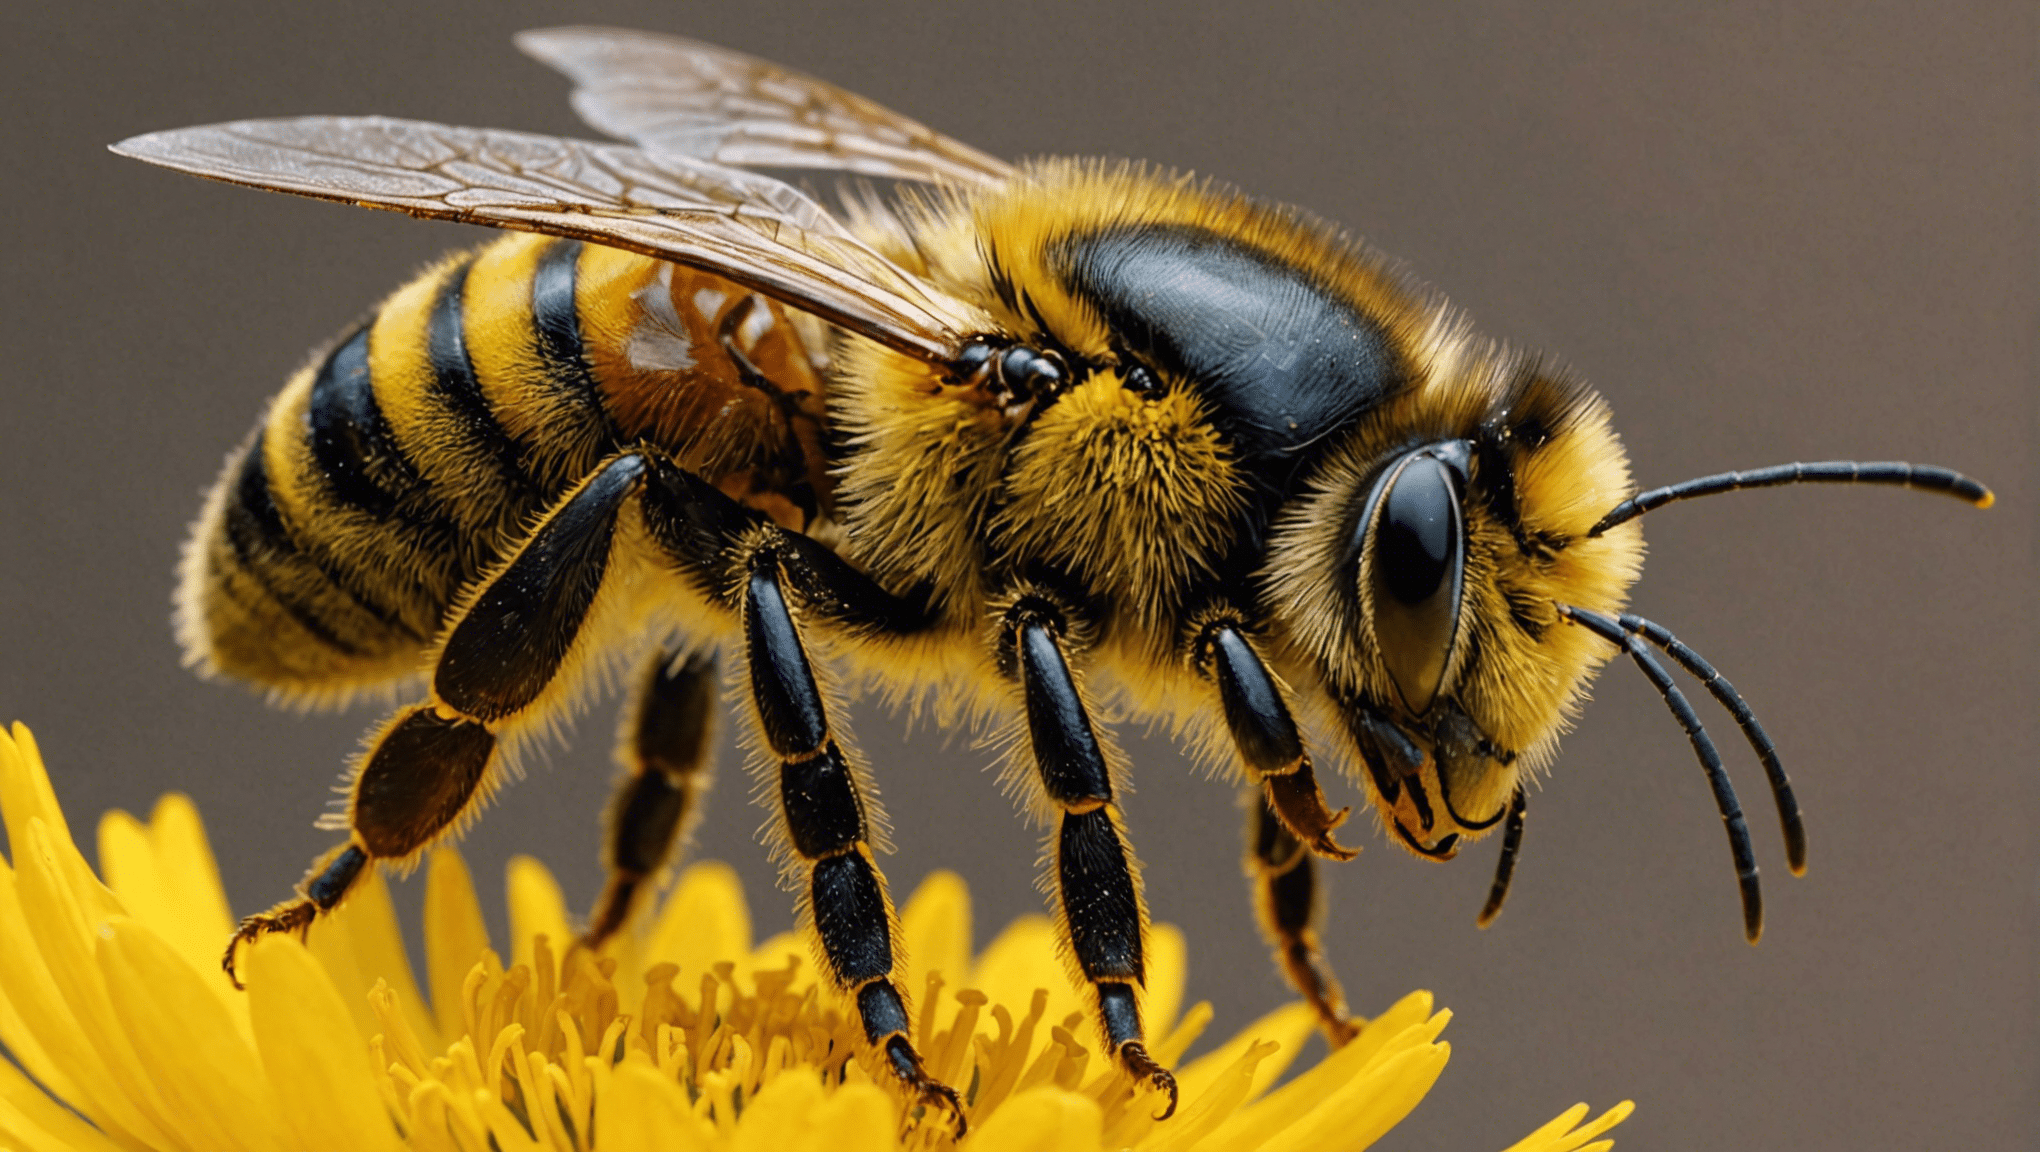 découvrez les incroyables propriétés de la cire d'abeille et ses usages dans cet article captivant.